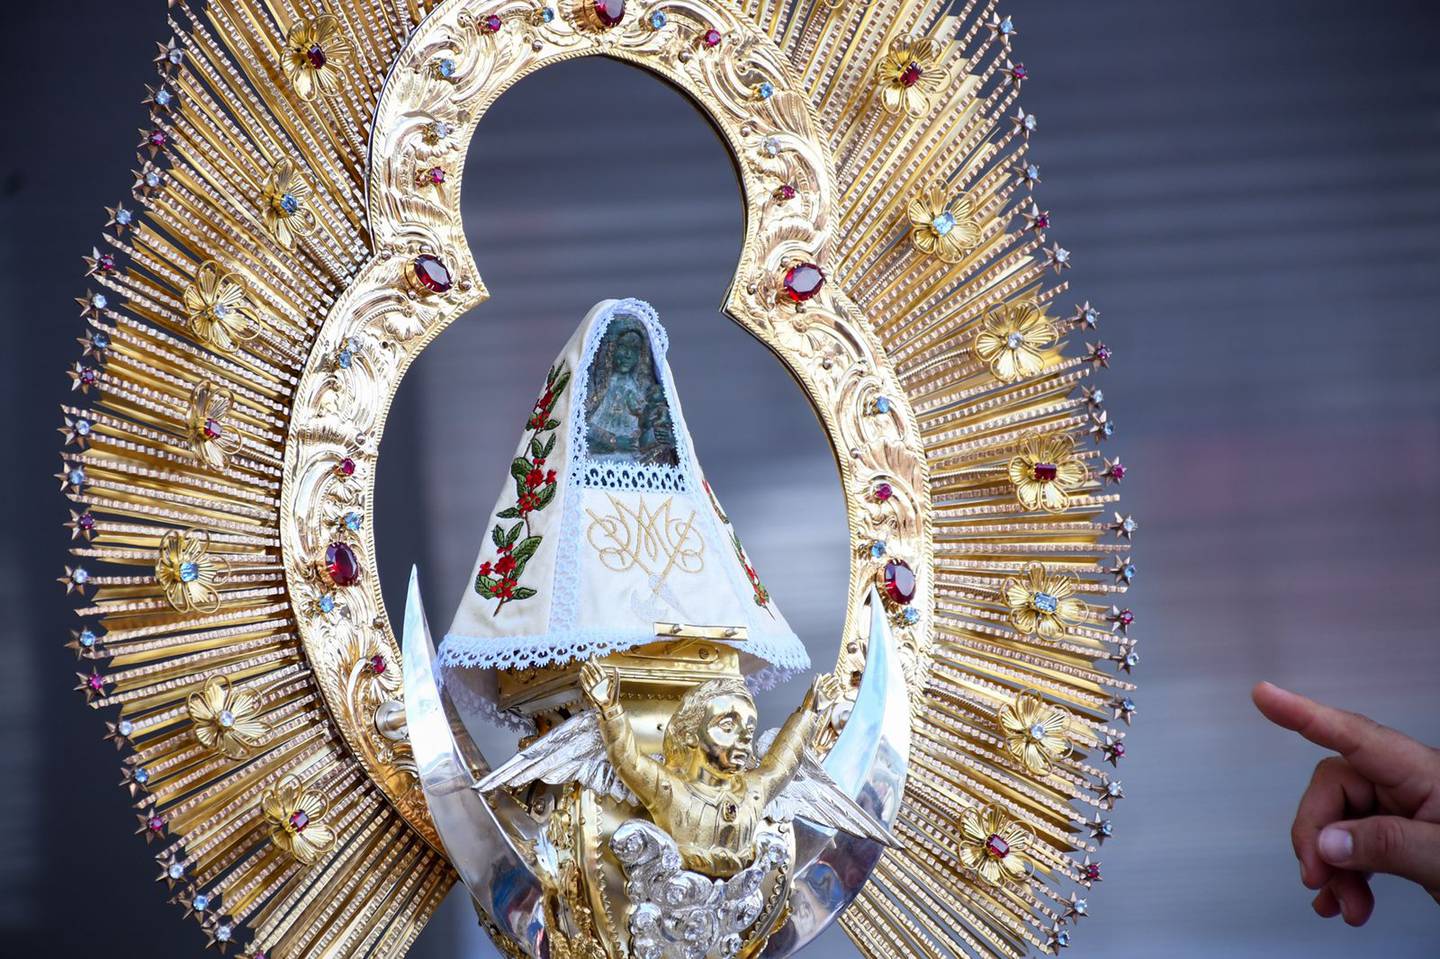 Este 1 de agosto se realizó la tradicional vestición de La Negrita, en la cual participaron cientos de fieles católicos en la plazoleta de la basílica de Nuestra Señora de Los Ángeles en Cartago. El vestido ganador fue de la diócesis de San Isidro del General.